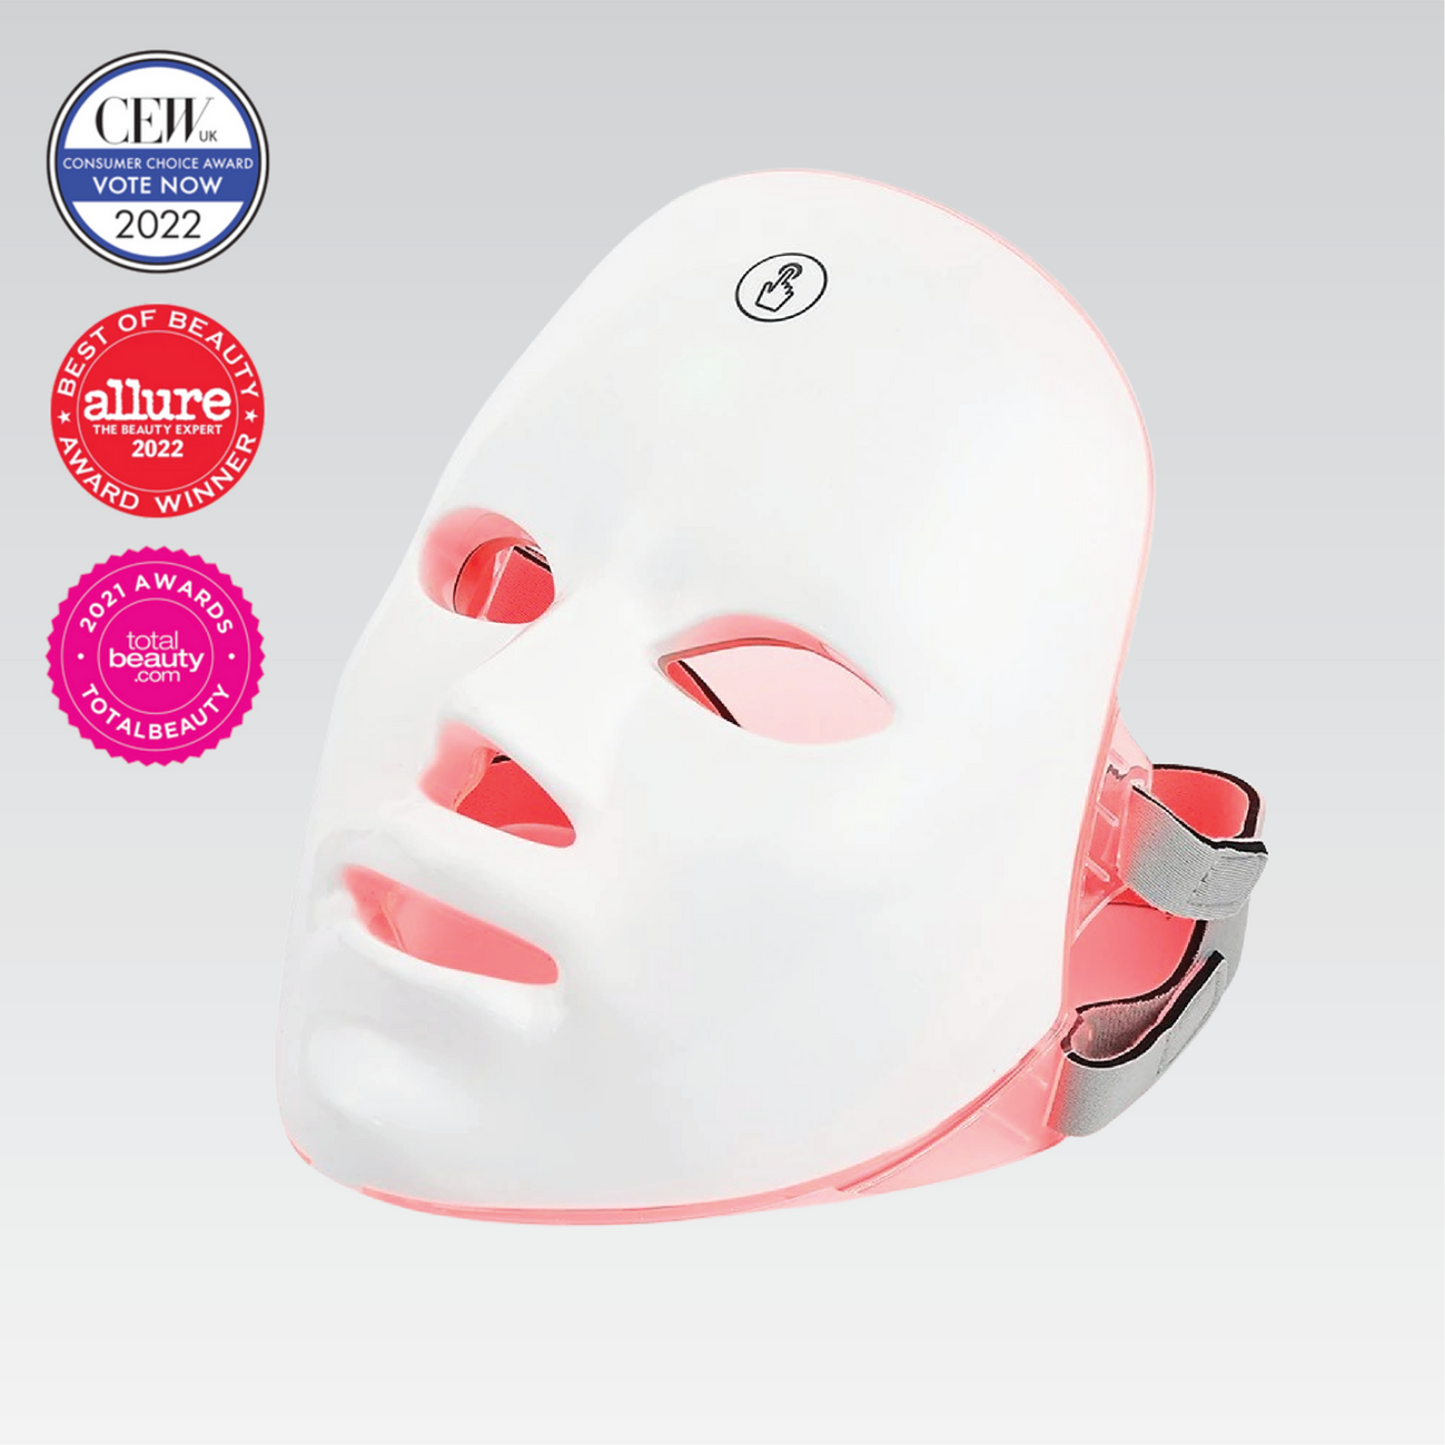 LUMINEXA™ - Original LED Skincare Mask